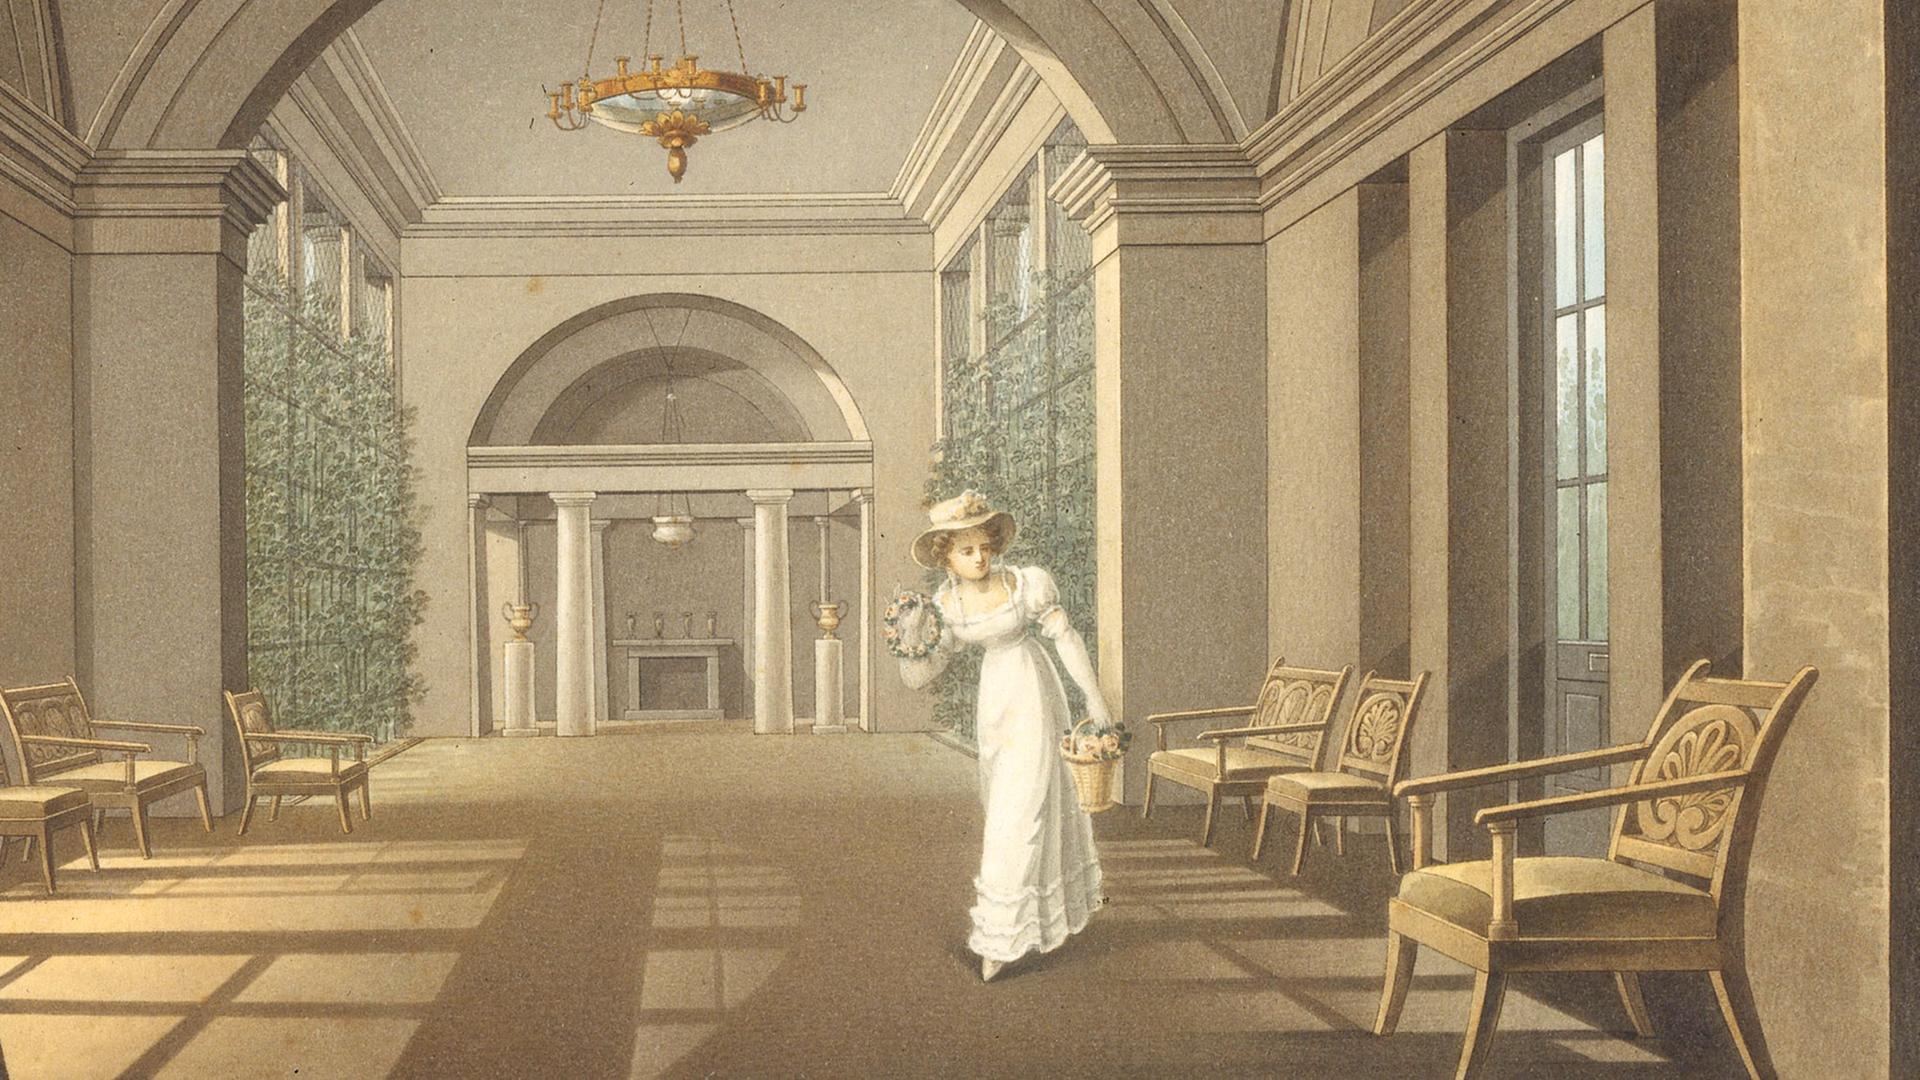 Mascha soll einen einflussreichen, sehr alten Grafen heiraten. Nur Dubrowski kann sie noch retten. Zu sehen: Aquarell Pawlowsk bei St. Petersburg  von Charles Cameron, um 1780). 